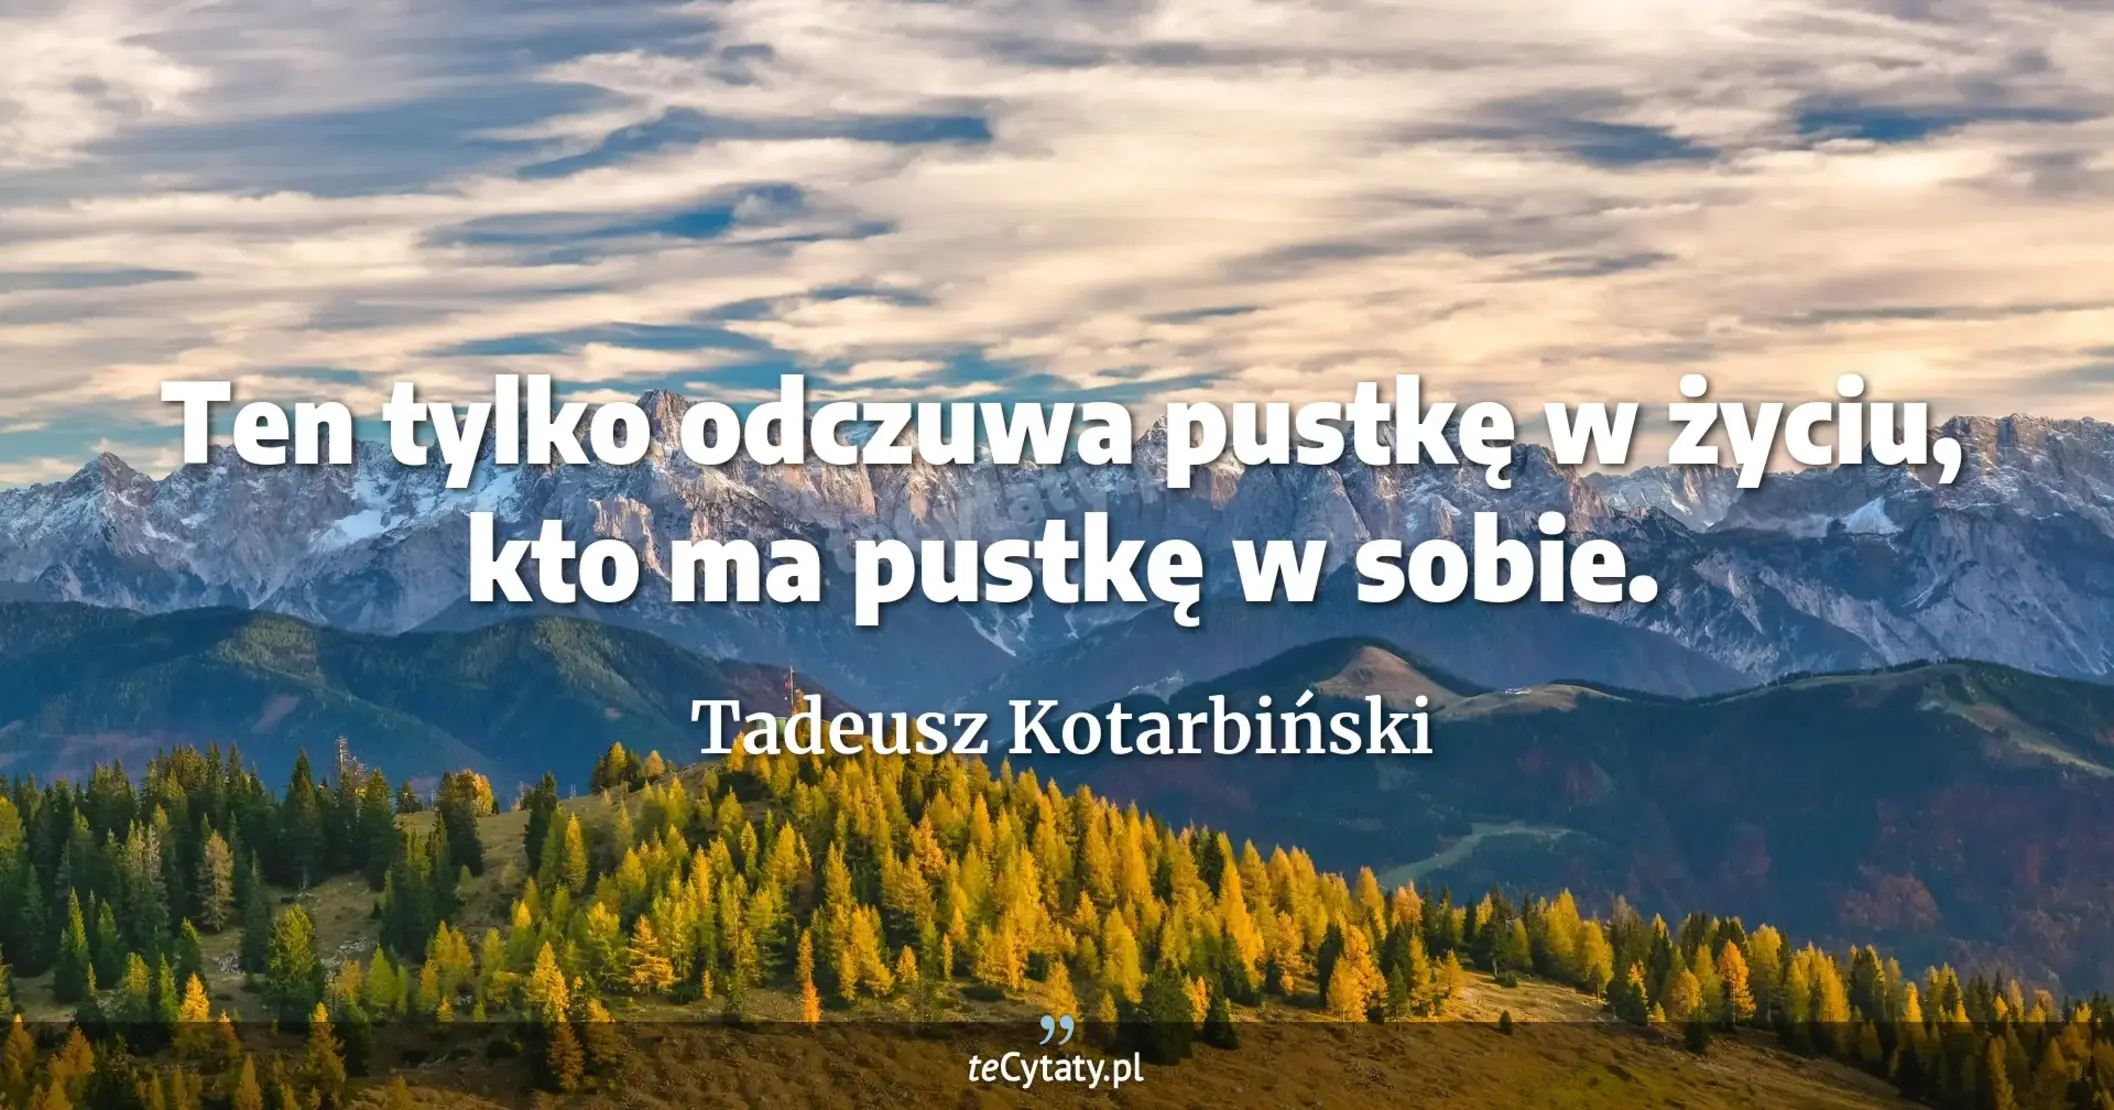 Ten tylko odczuwa pustkę w życiu, kto ma pustkę w sobie. - Tadeusz Kotarbiński